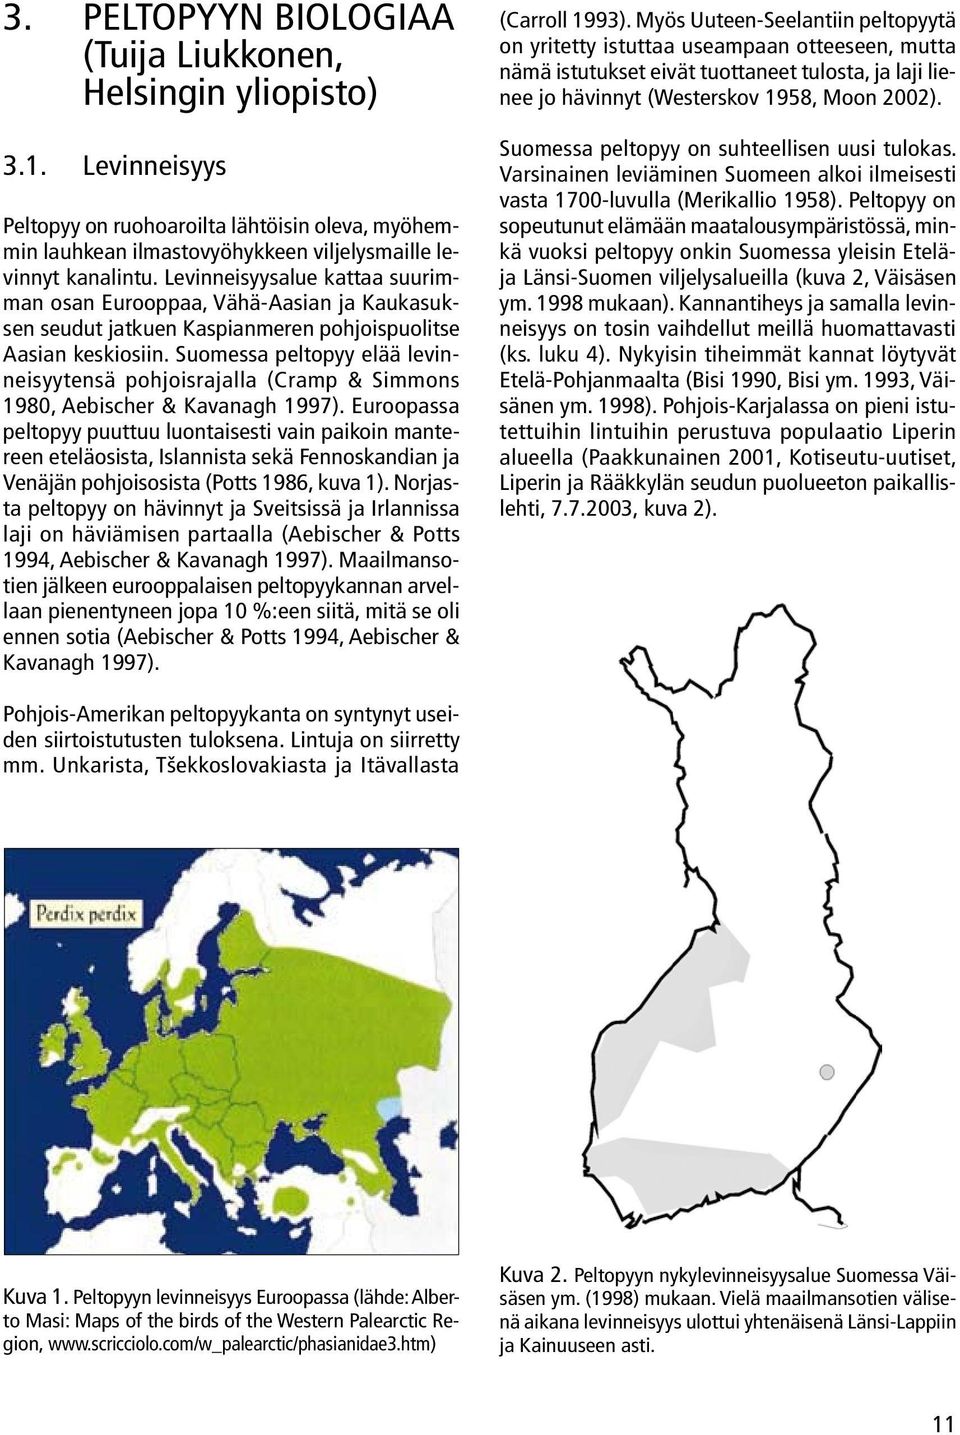 Suomessa peltopyy elää levinneisyytensä pohjoisrajalla (Cramp & Simmons 1980, Aebischer & Kavanagh 1997).